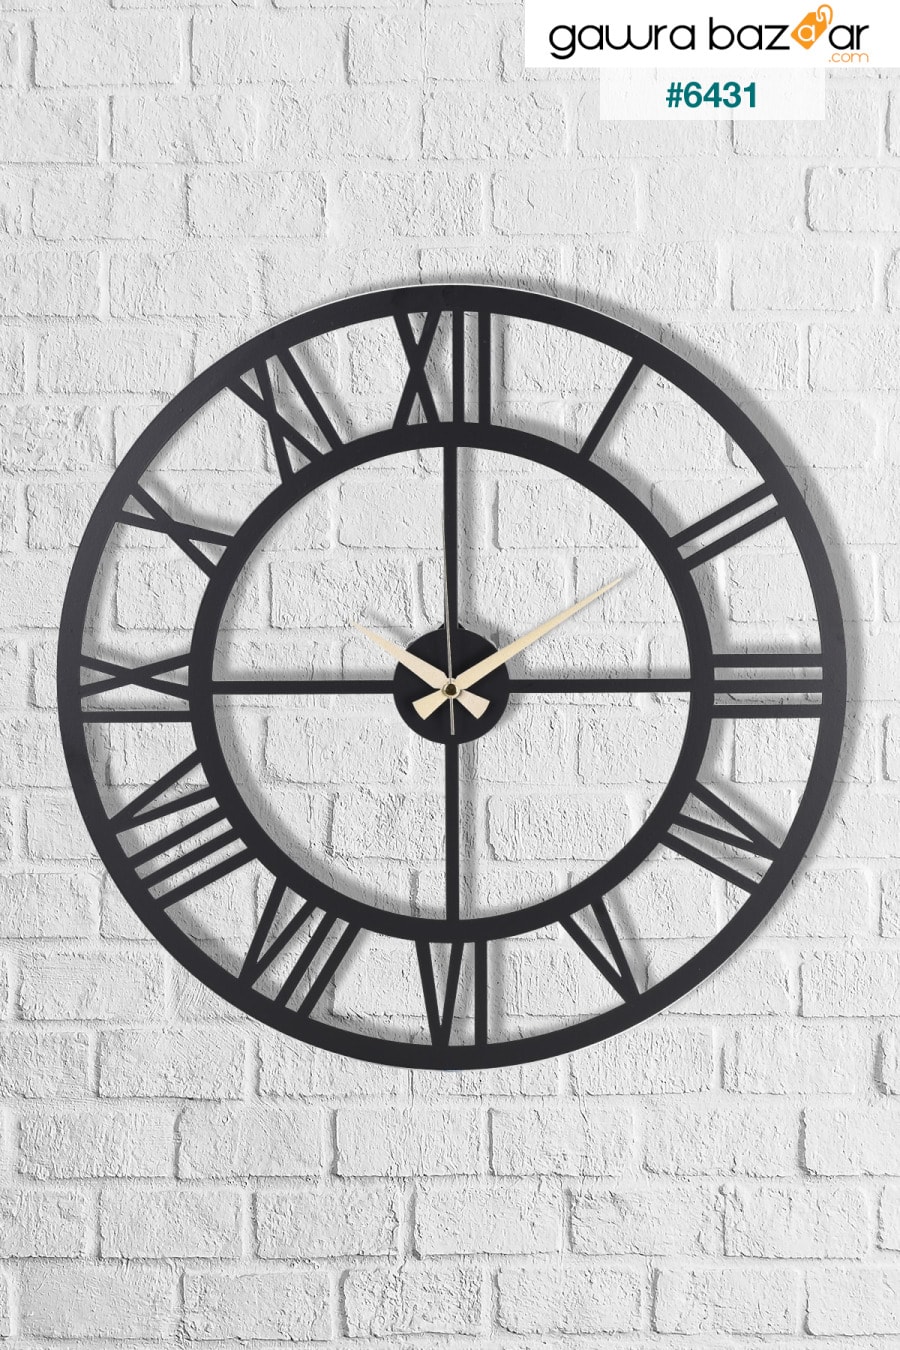 مويكا ساعة حائط معدنية بأرقام رومانية سوداء 50x50 سم Mds-50 Muyika Design 1